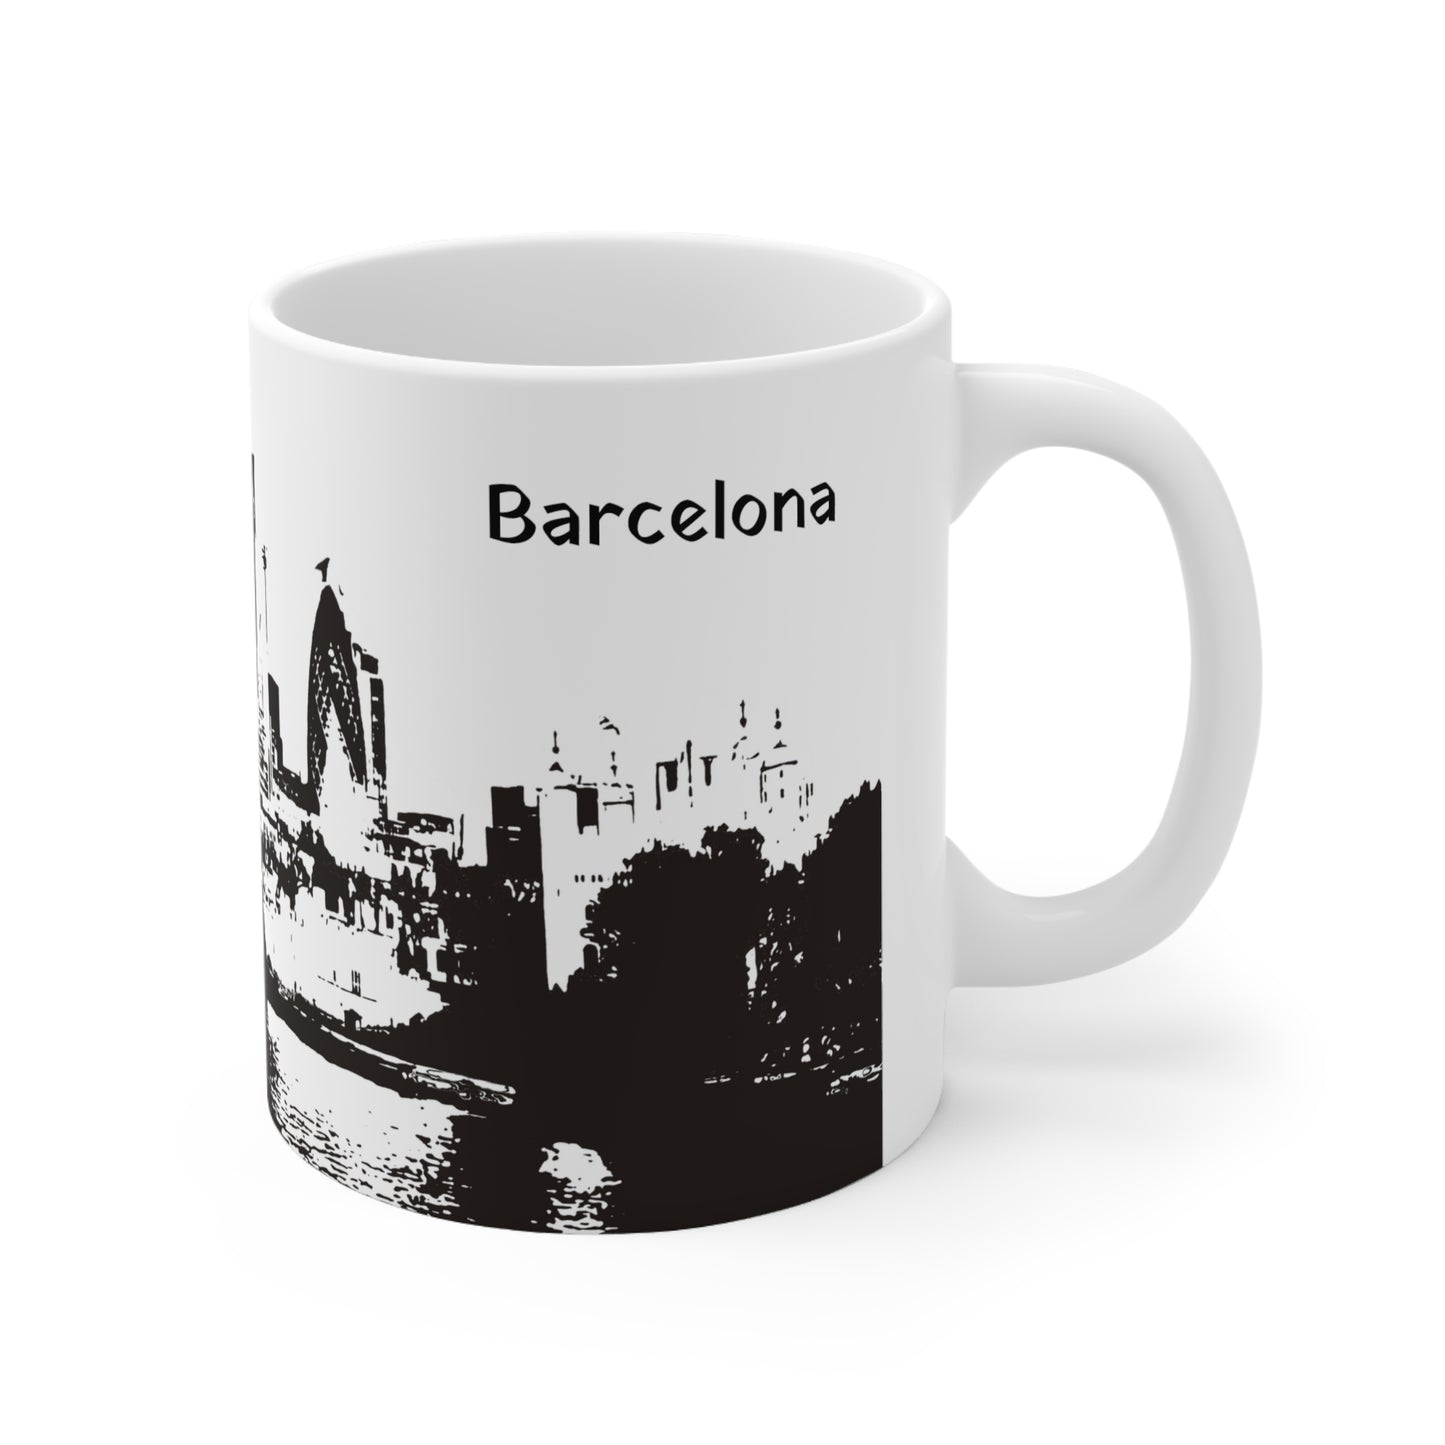 Barcelona-3 Ceramic Mug 11oz